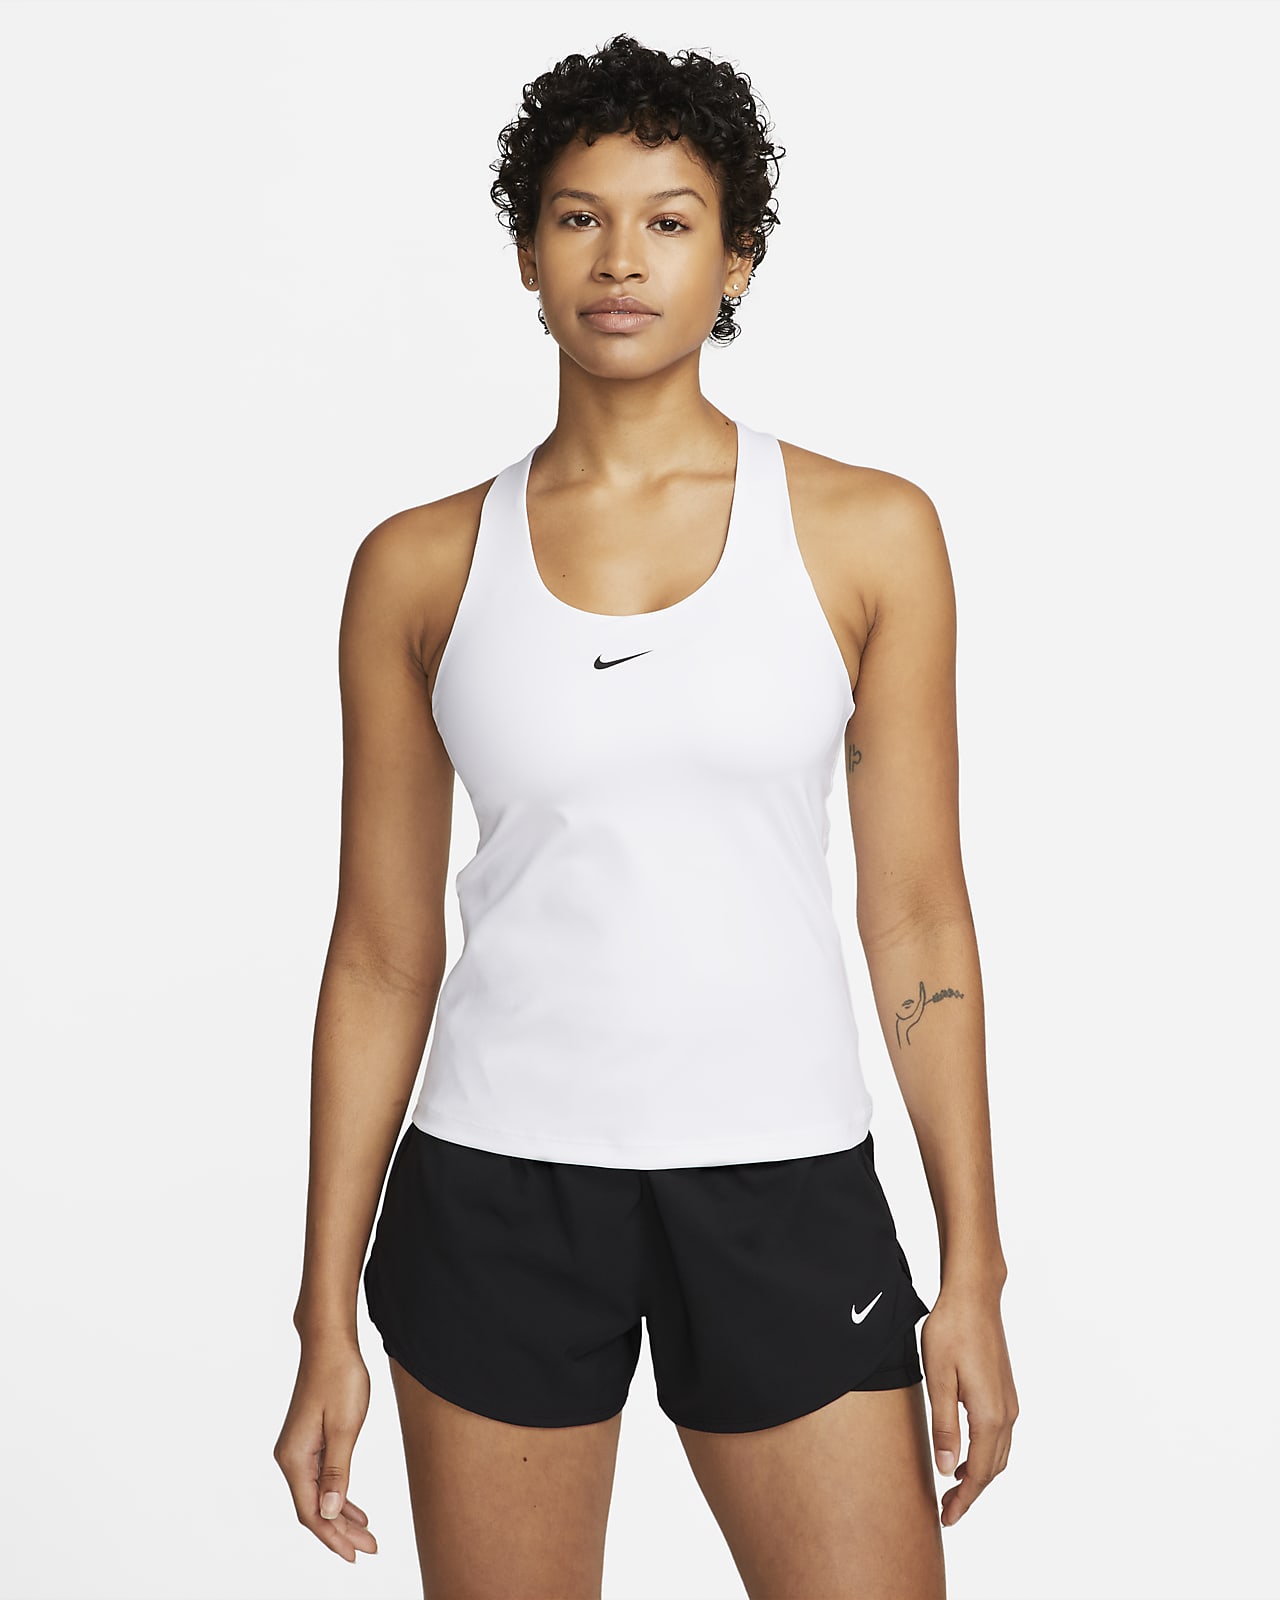 Dámské tílko Nike Swoosh se sportovní podprsenkou se střední oporou a vycpávkami